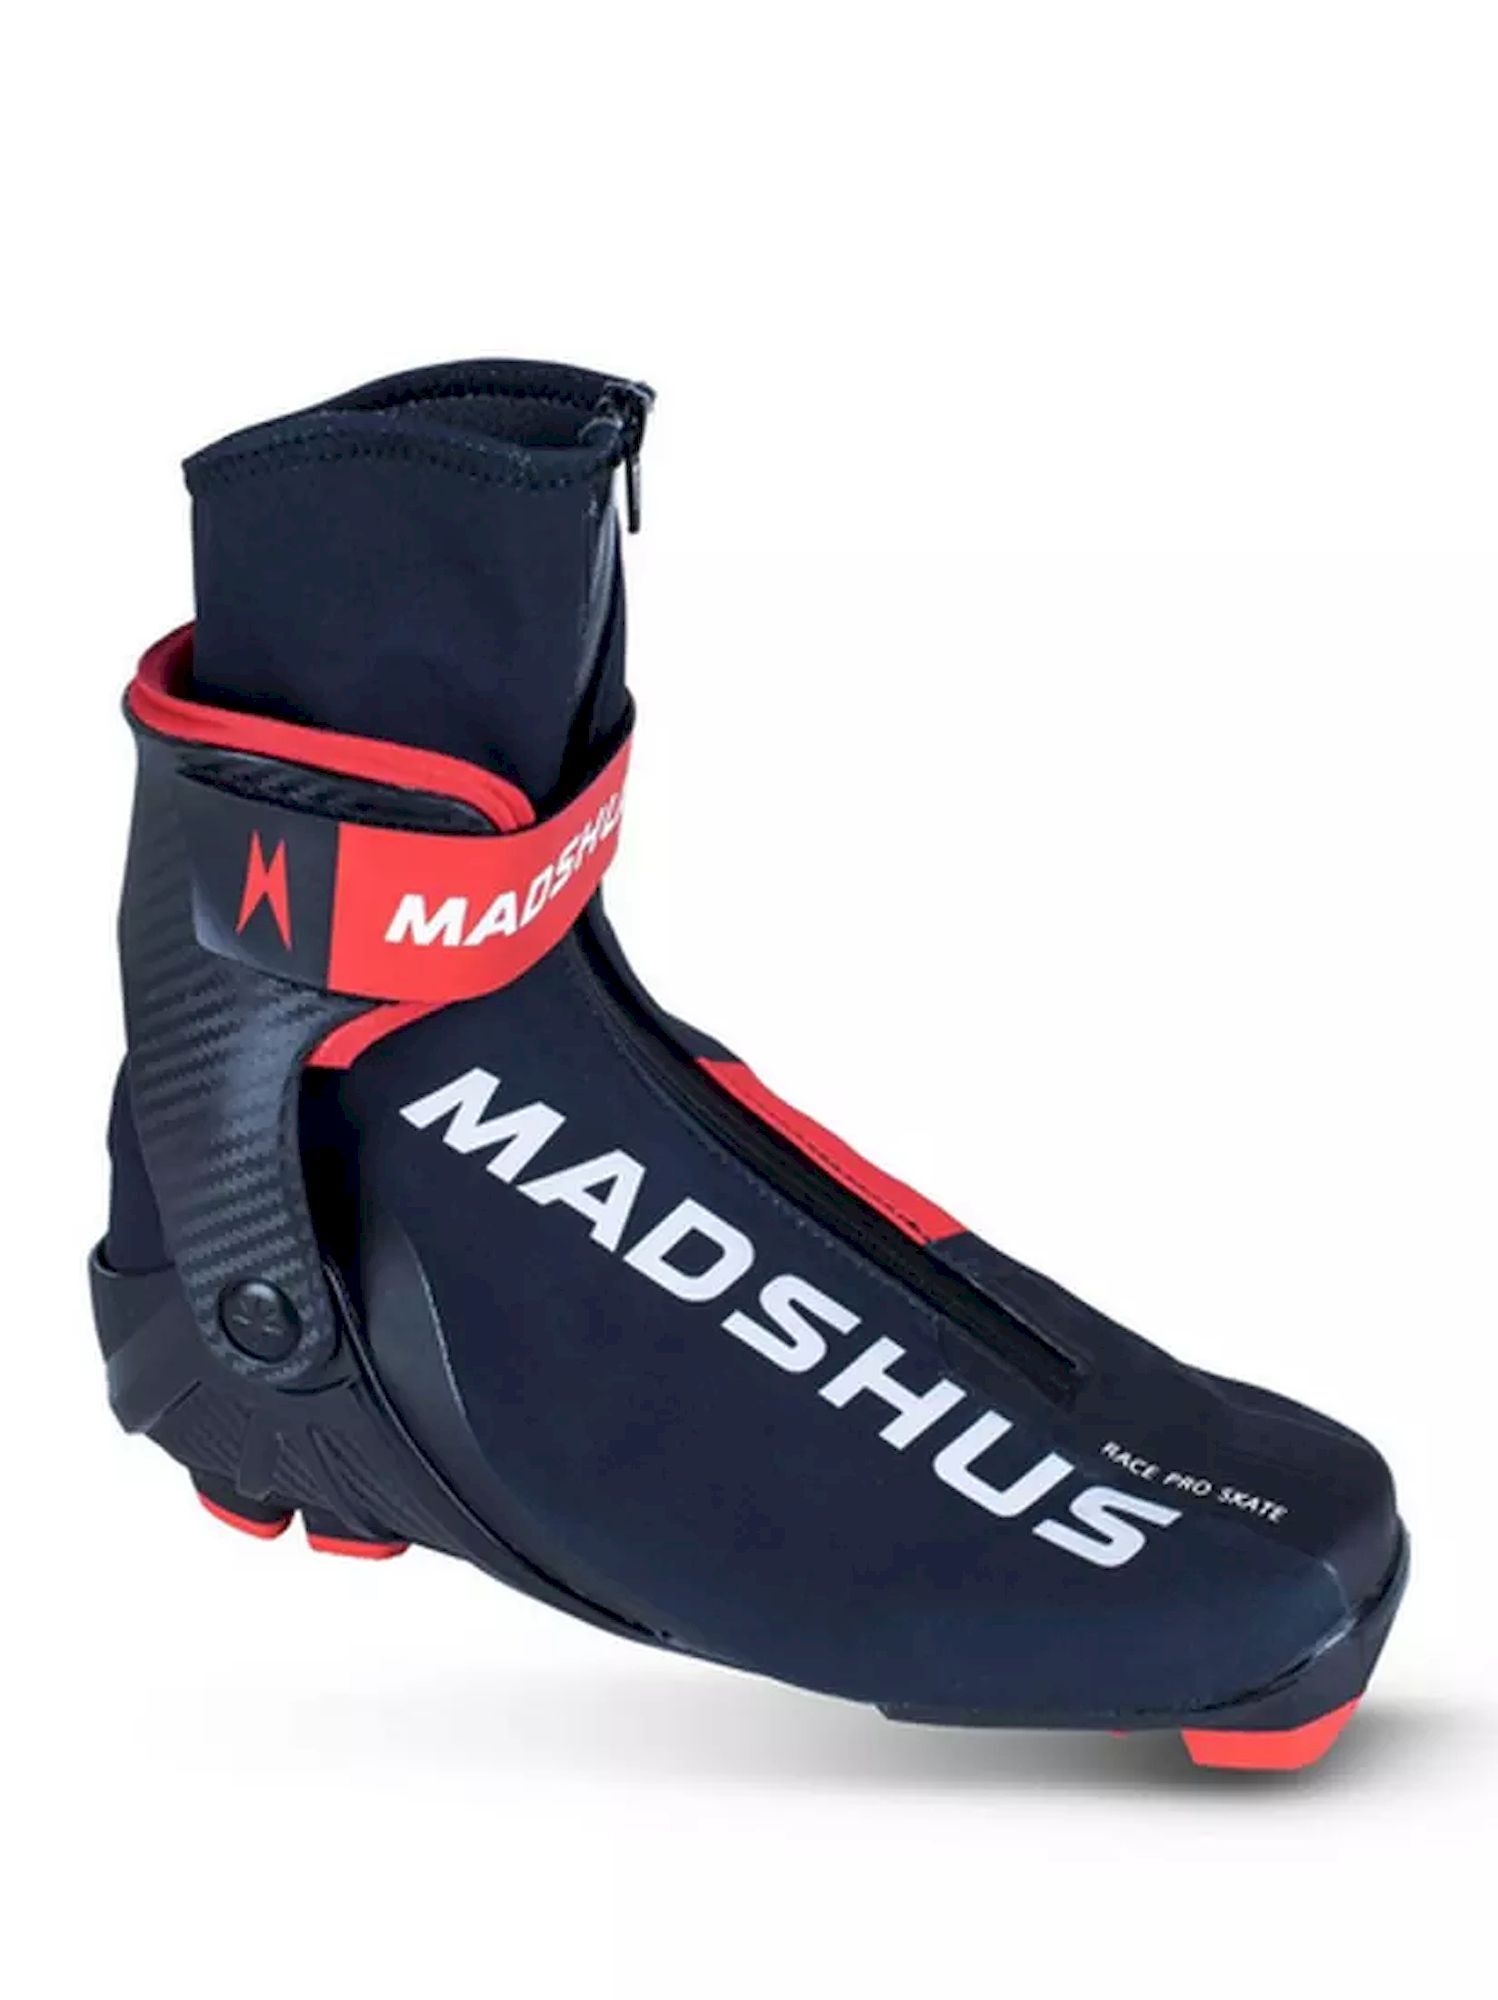 Madshus Race Pro Skate - Langlaufschuhe | Hardloop